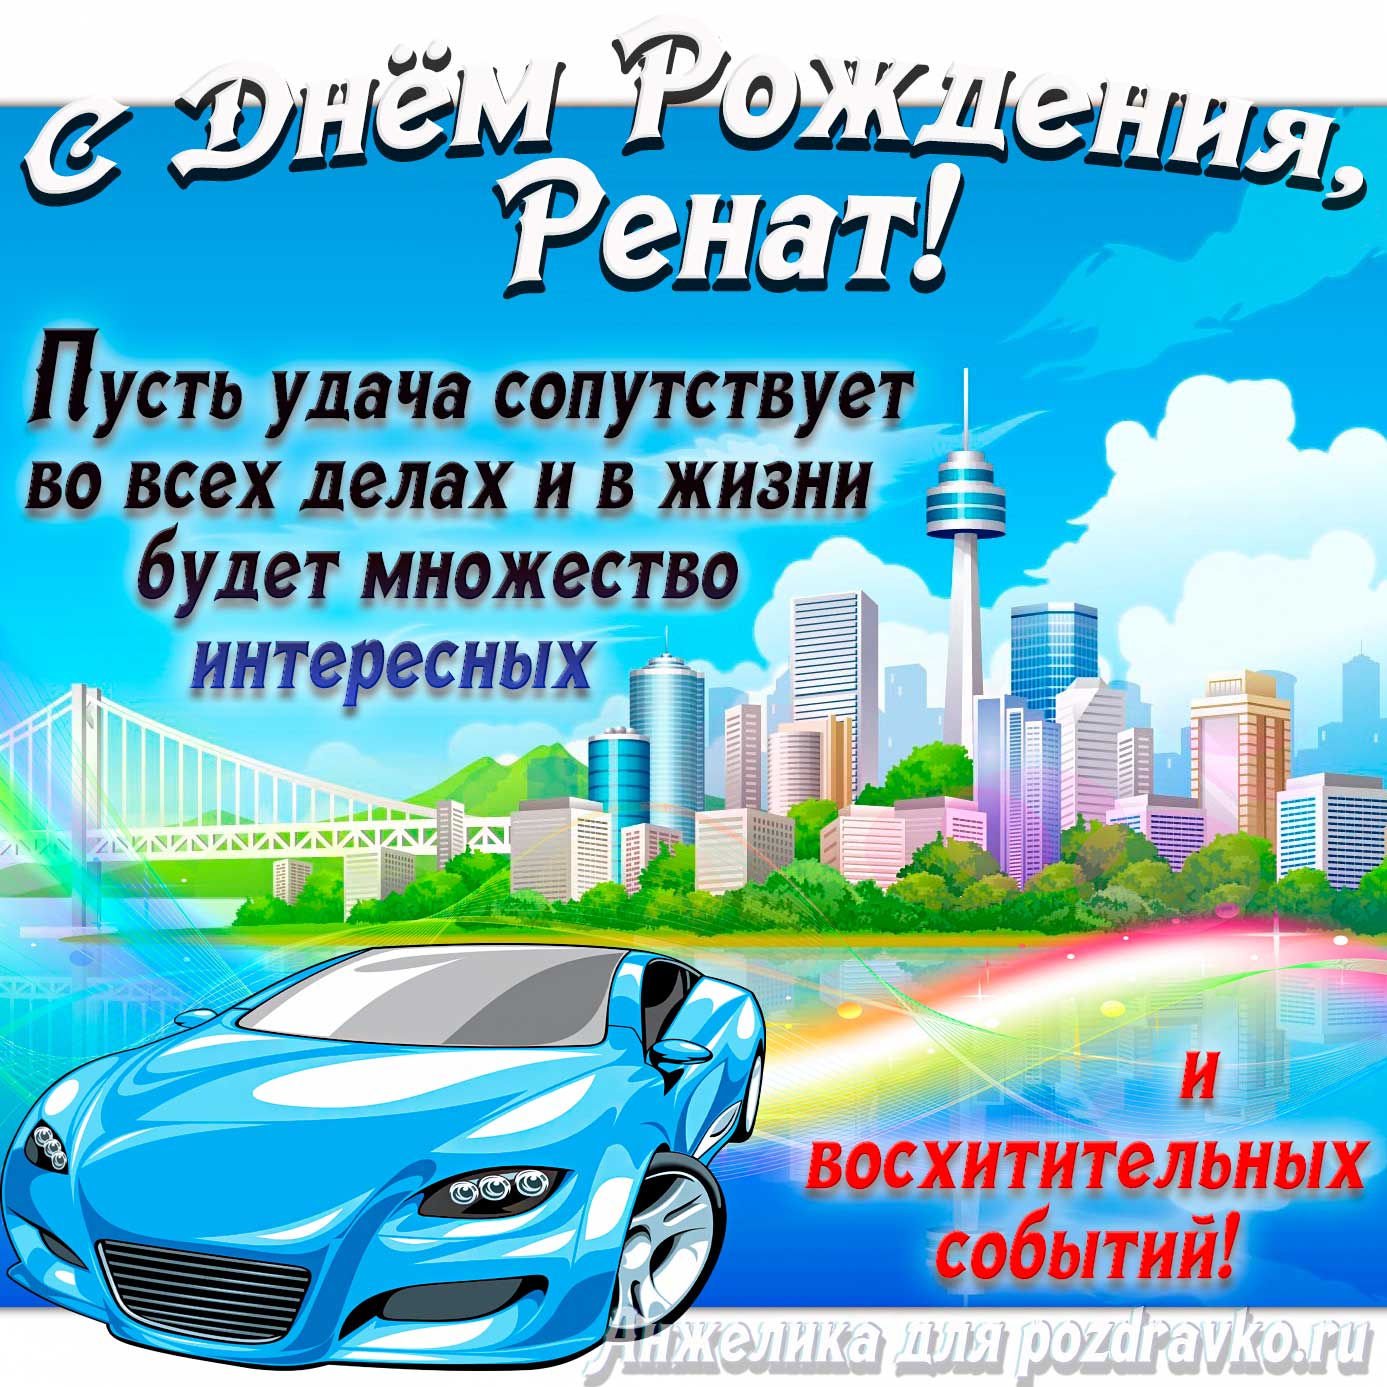 Открытка - с Днём Рождения Ренат с голубой машиной и пожеланием. Скачать бесплатно или отправить картинку.